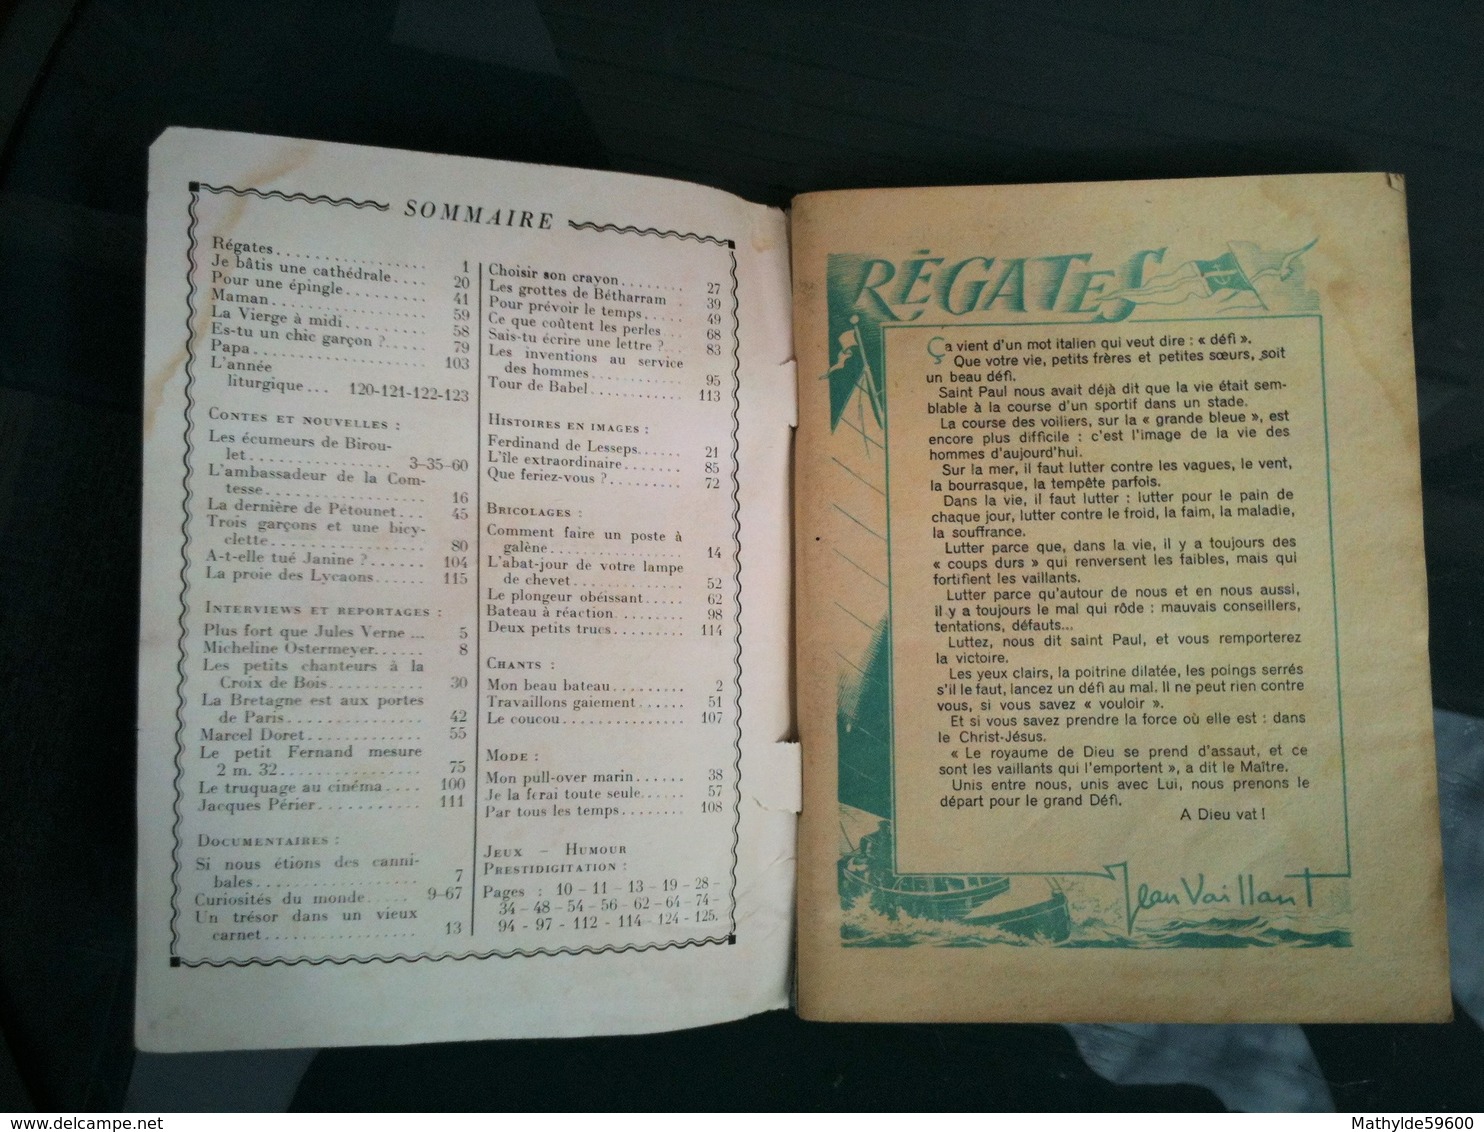 Regates De Coeurs Vaillants - Numéro Special - Decembre 1950 - 1950 - Today